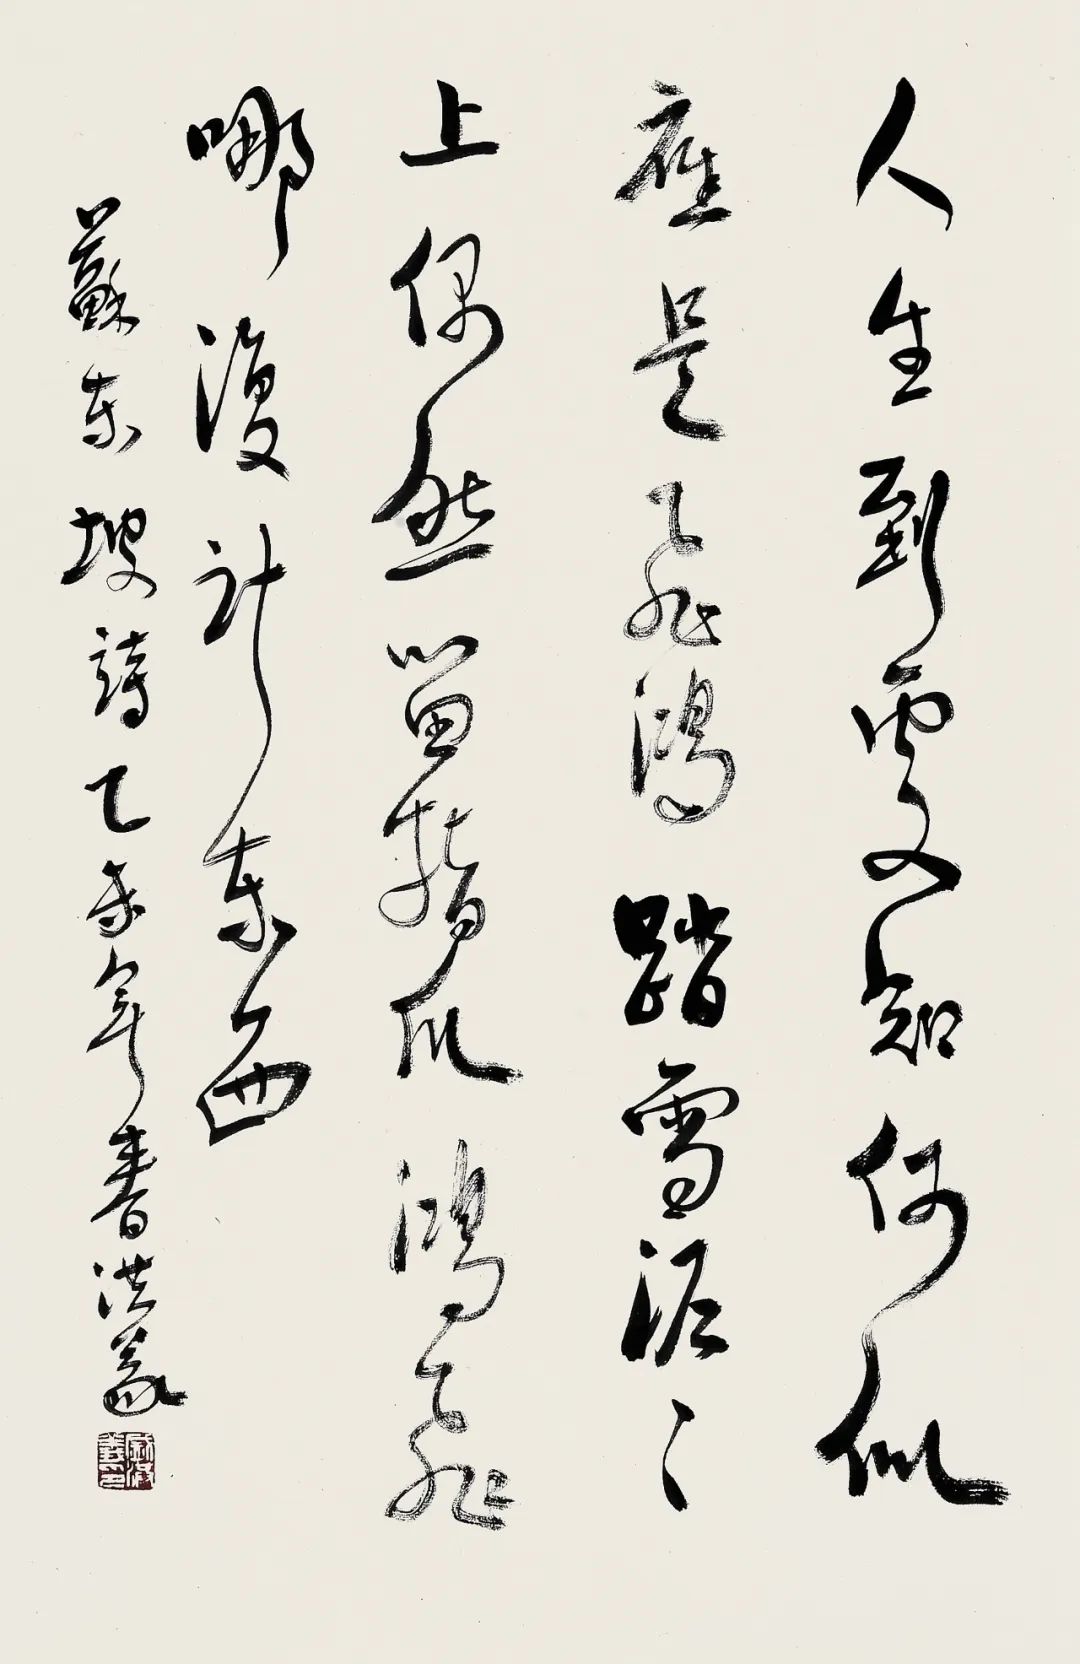 盛洪义书画篆刻邀请展将于4月28日在济阳美术馆开幕